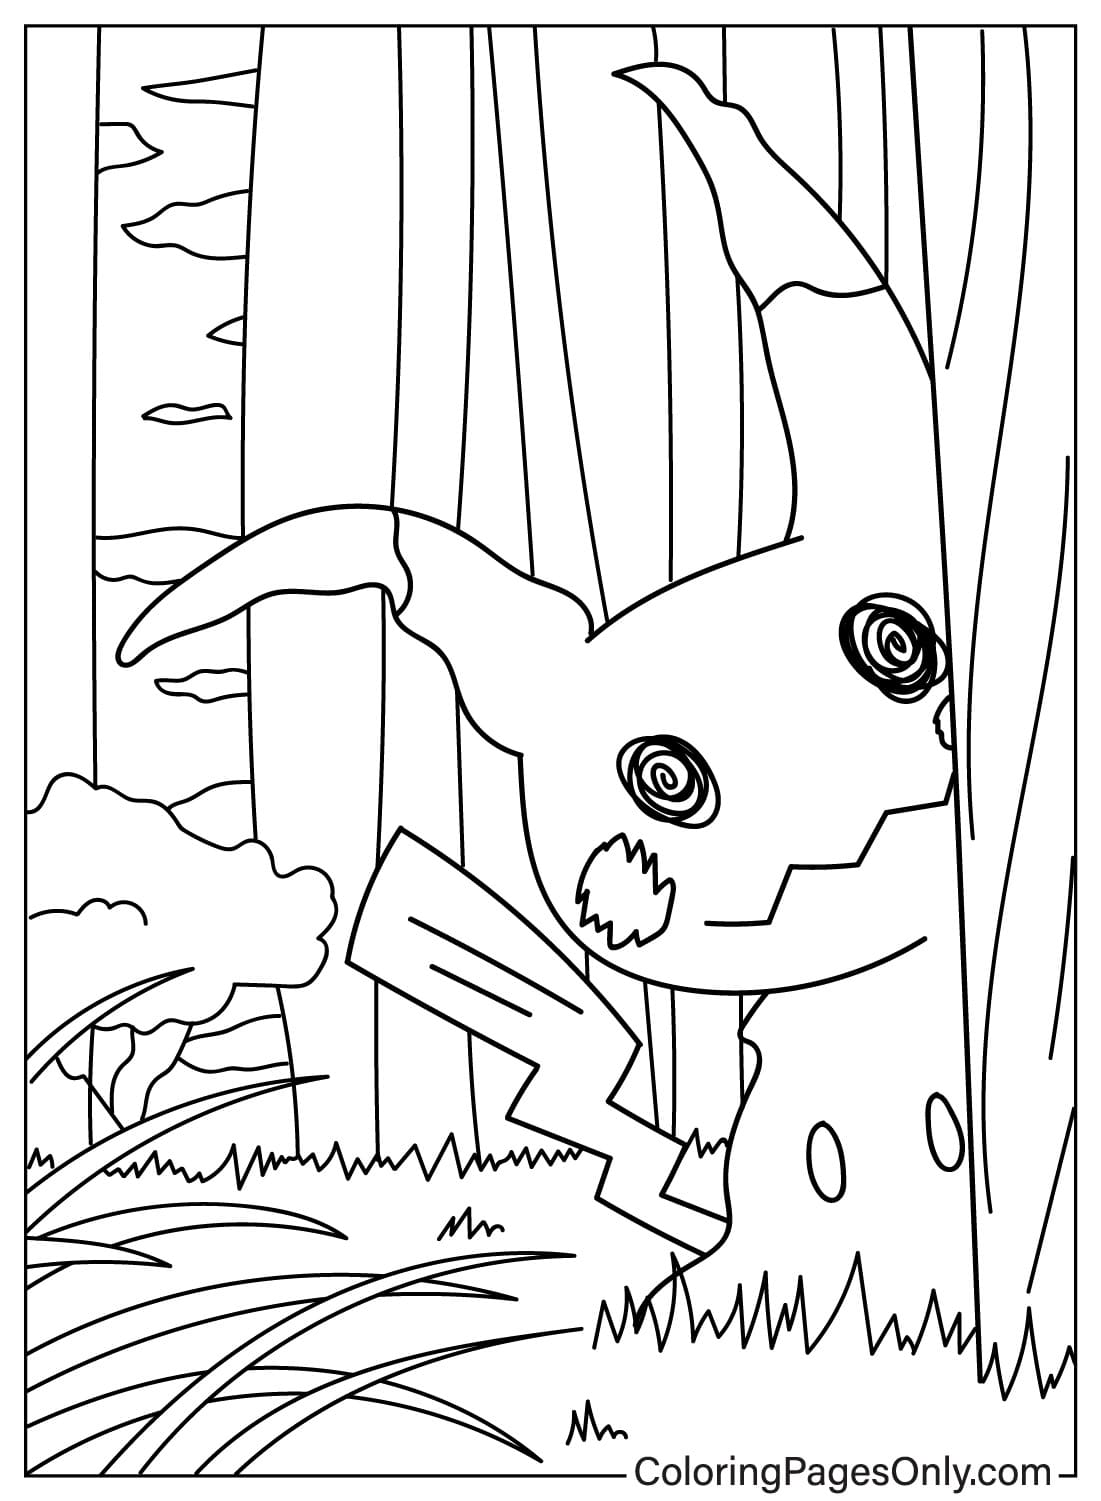 Mimikyu Hiding Behind a Tree from Mimikyu